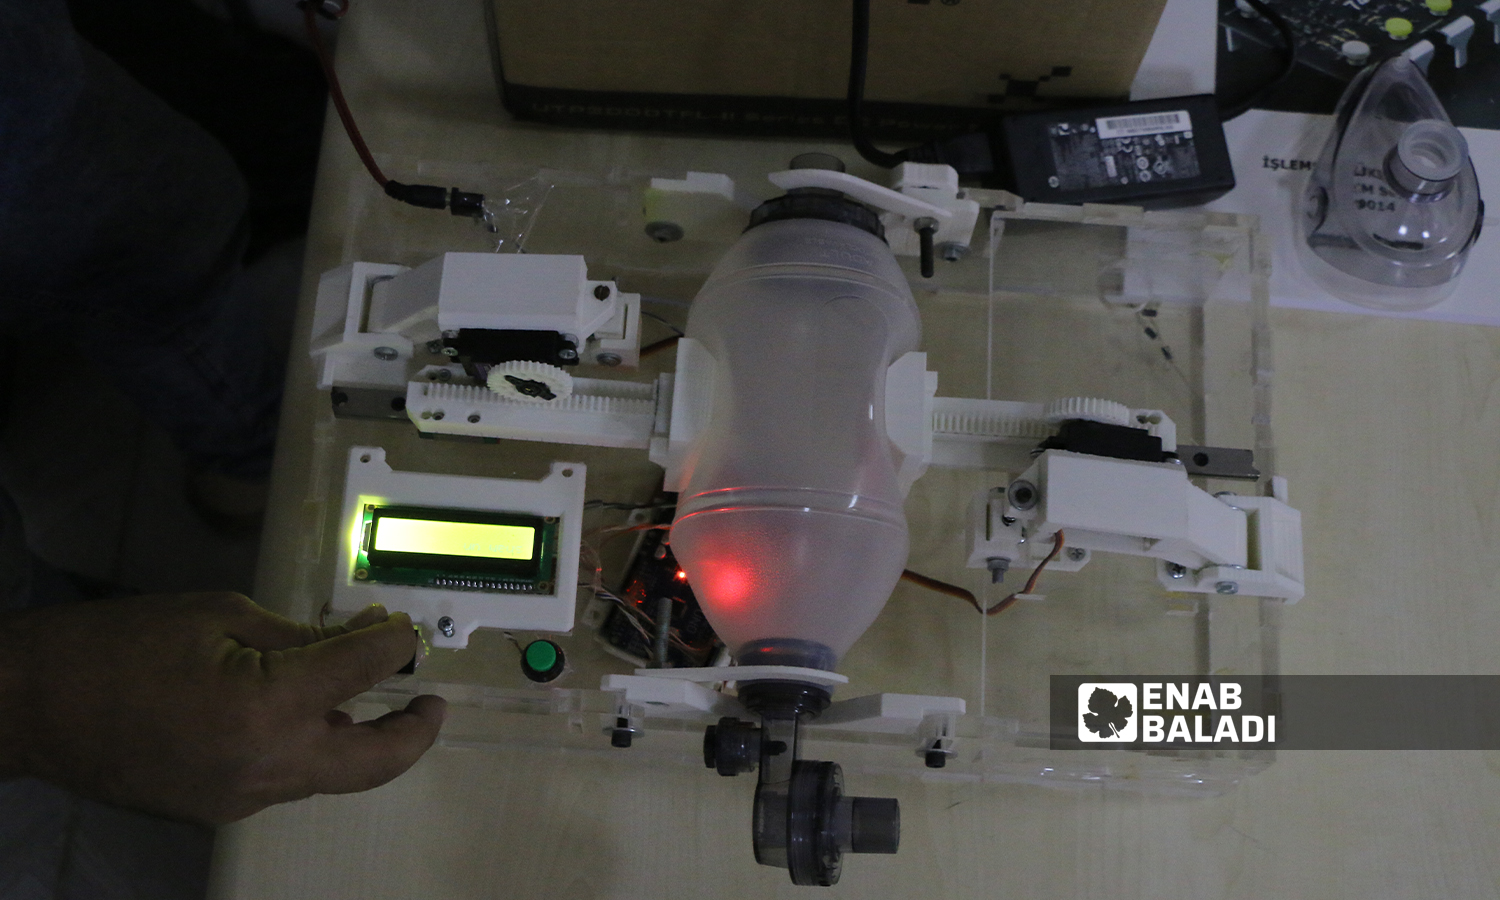 التجريب العملي لجهاز التنفس الاصطناعي الذي ابتكره طالب حديث التخرج من جامعة "الشام" بريف حلب  5 تشرين الأول 2021 (عنب بلدي - وليد عثمان)